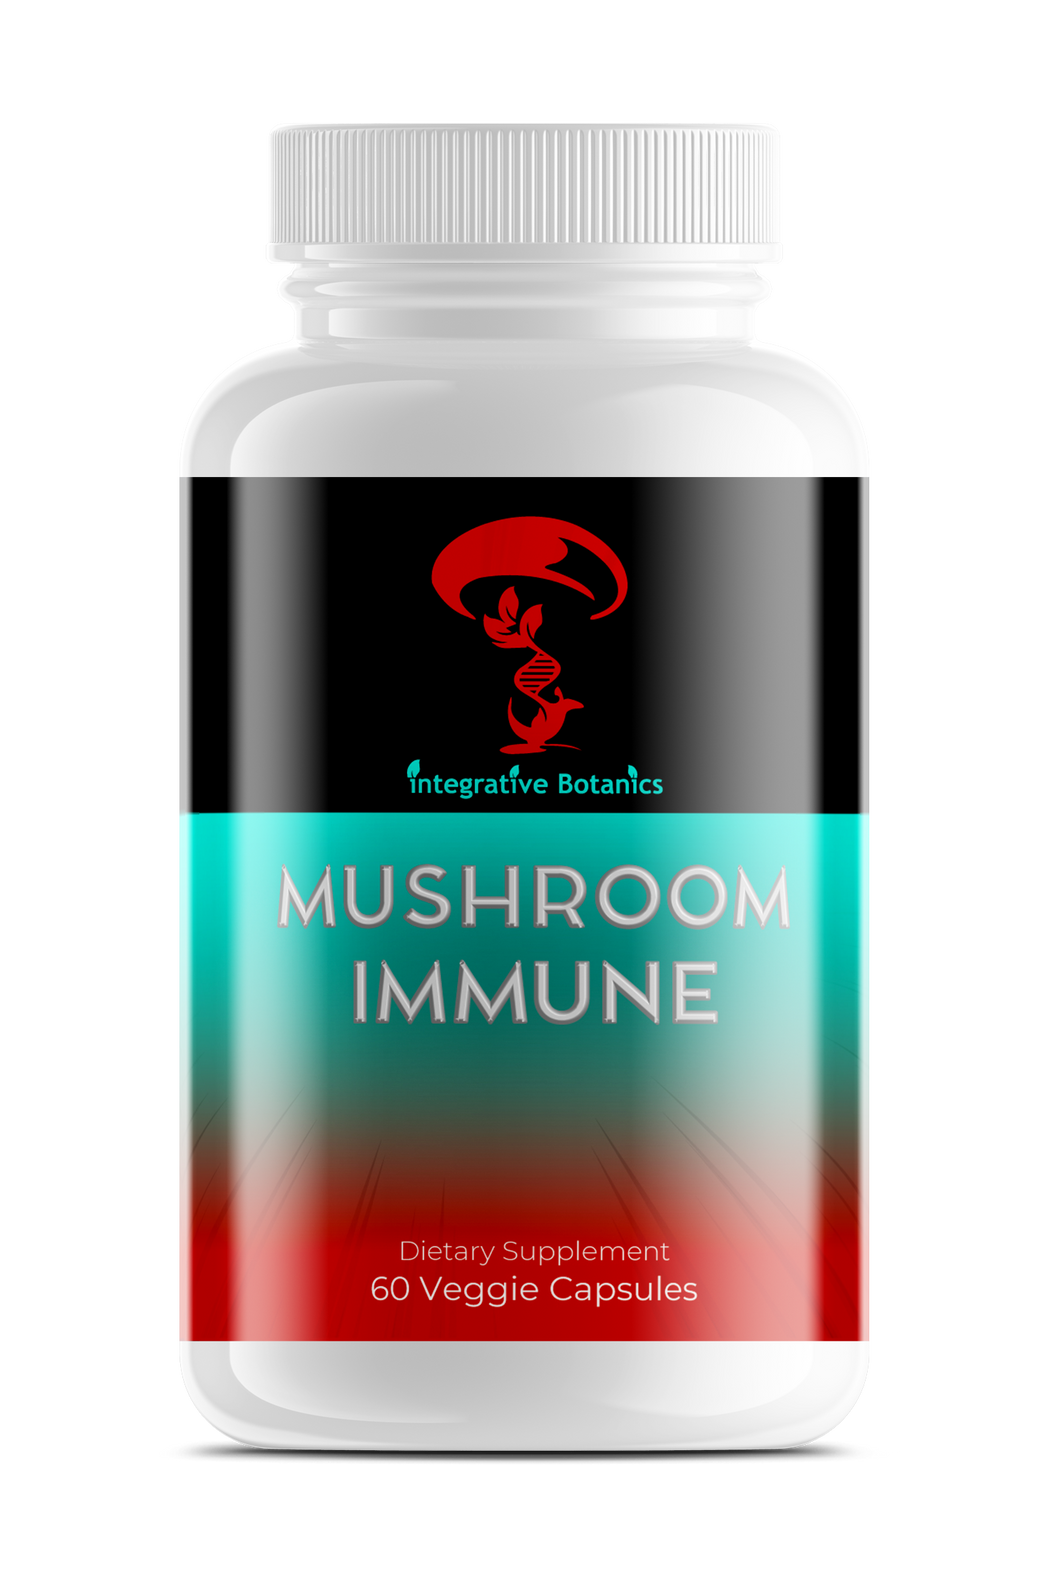 Mushroom Immune Blend assists in immune modulation